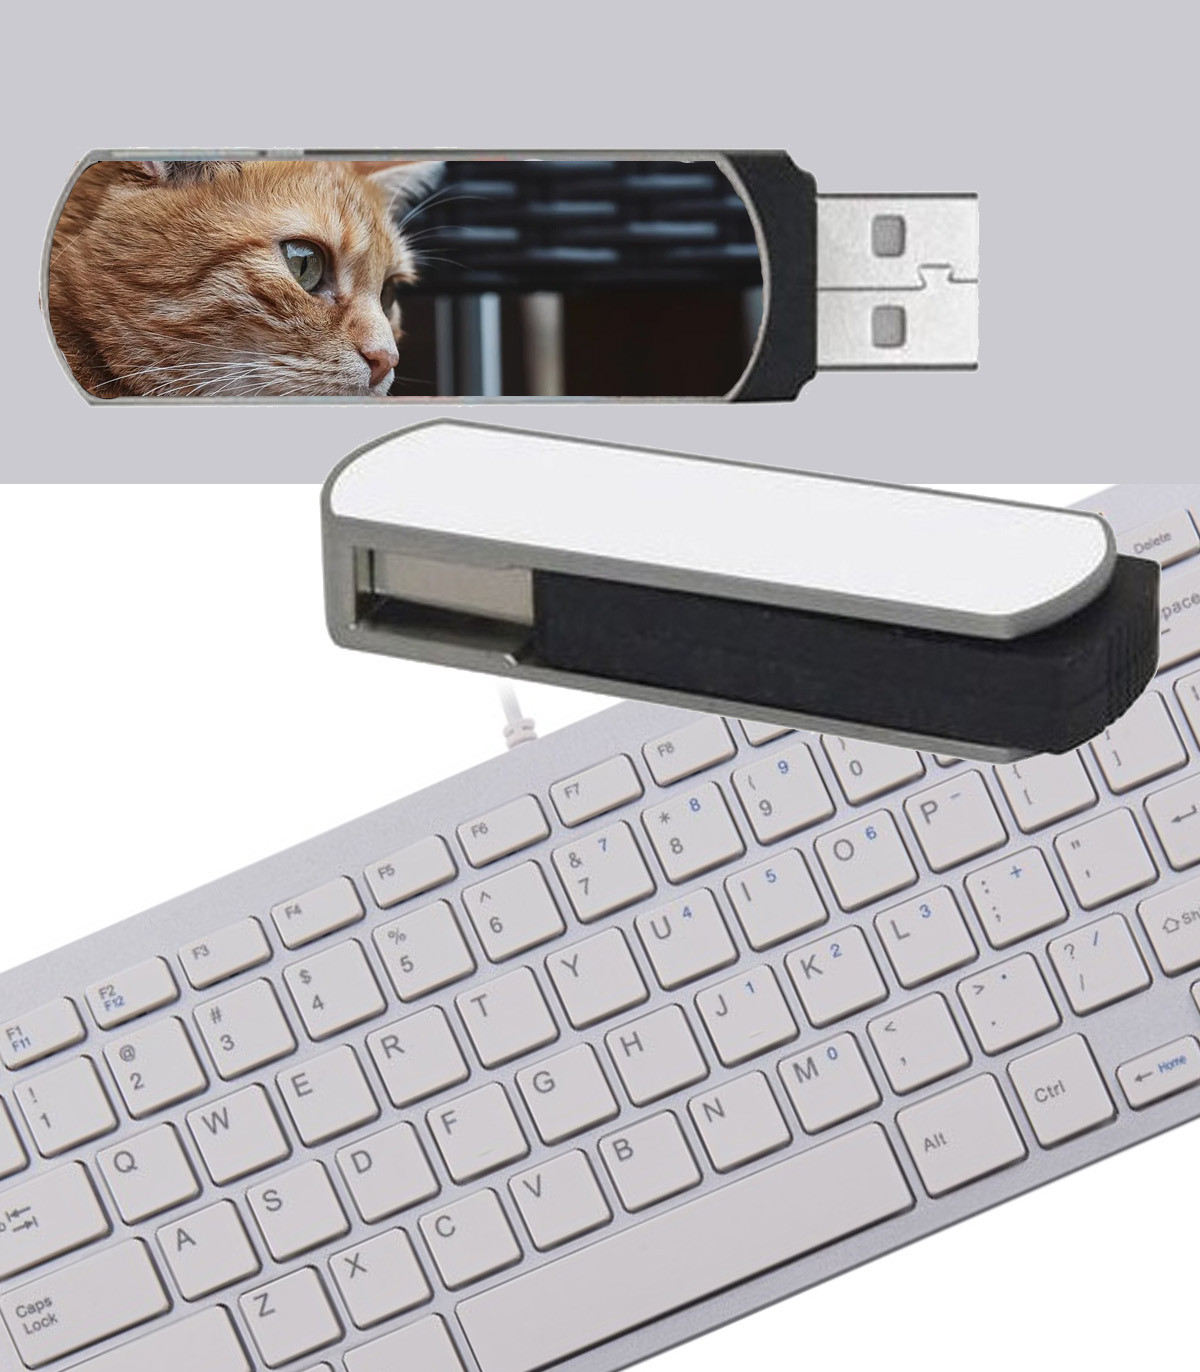 Votre clé USB sera personnalisée avec vos photos en cadeau g